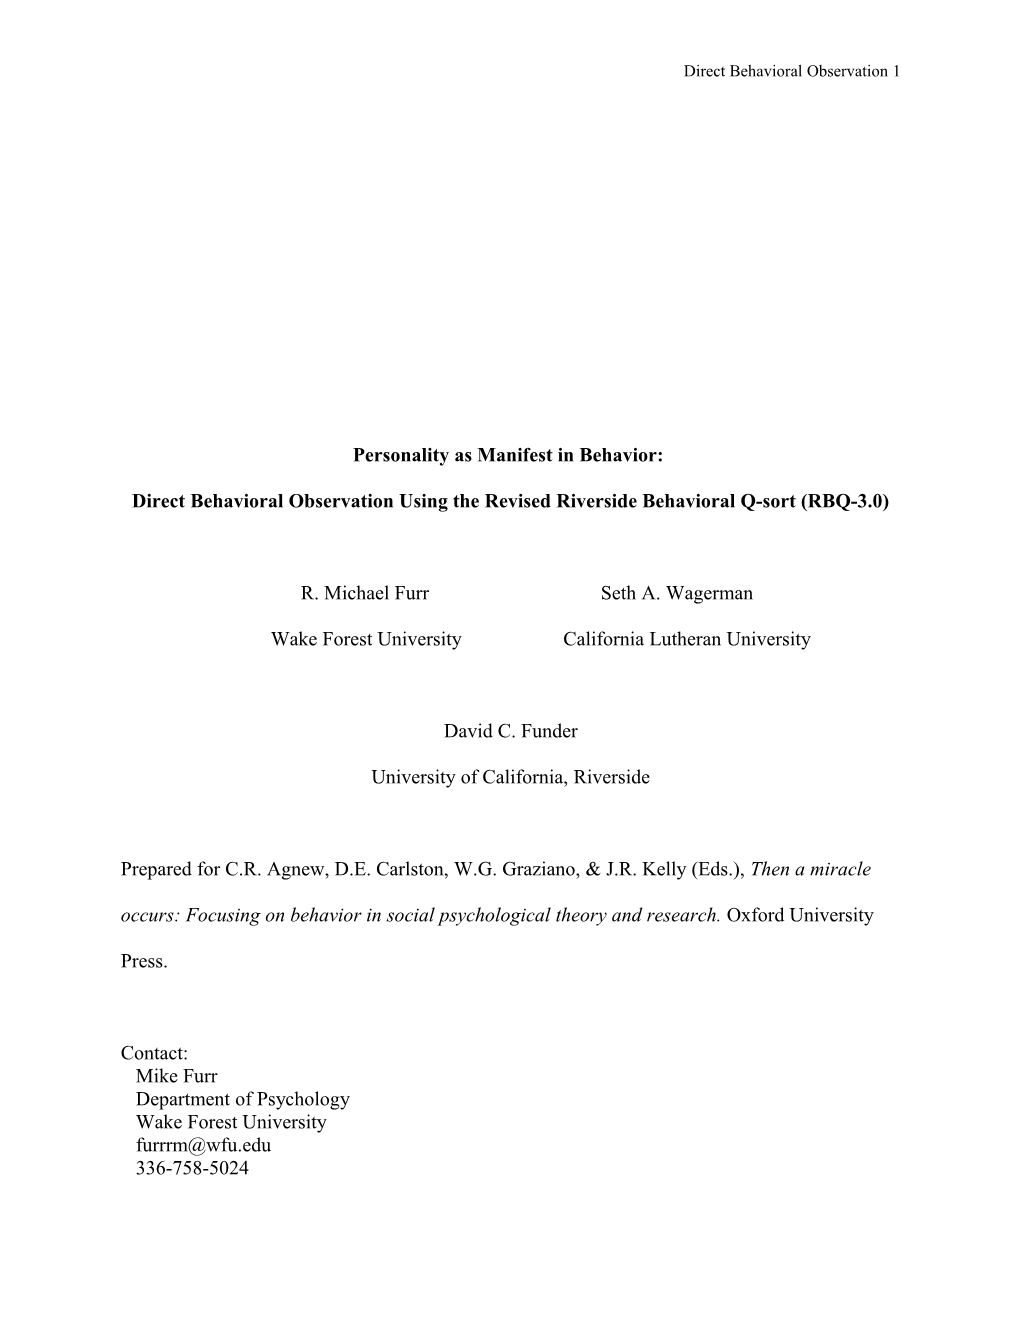 Direct Behavioral Observation Using the Revised Riverside Behavioral Q-Sort (RBQ-3.0)